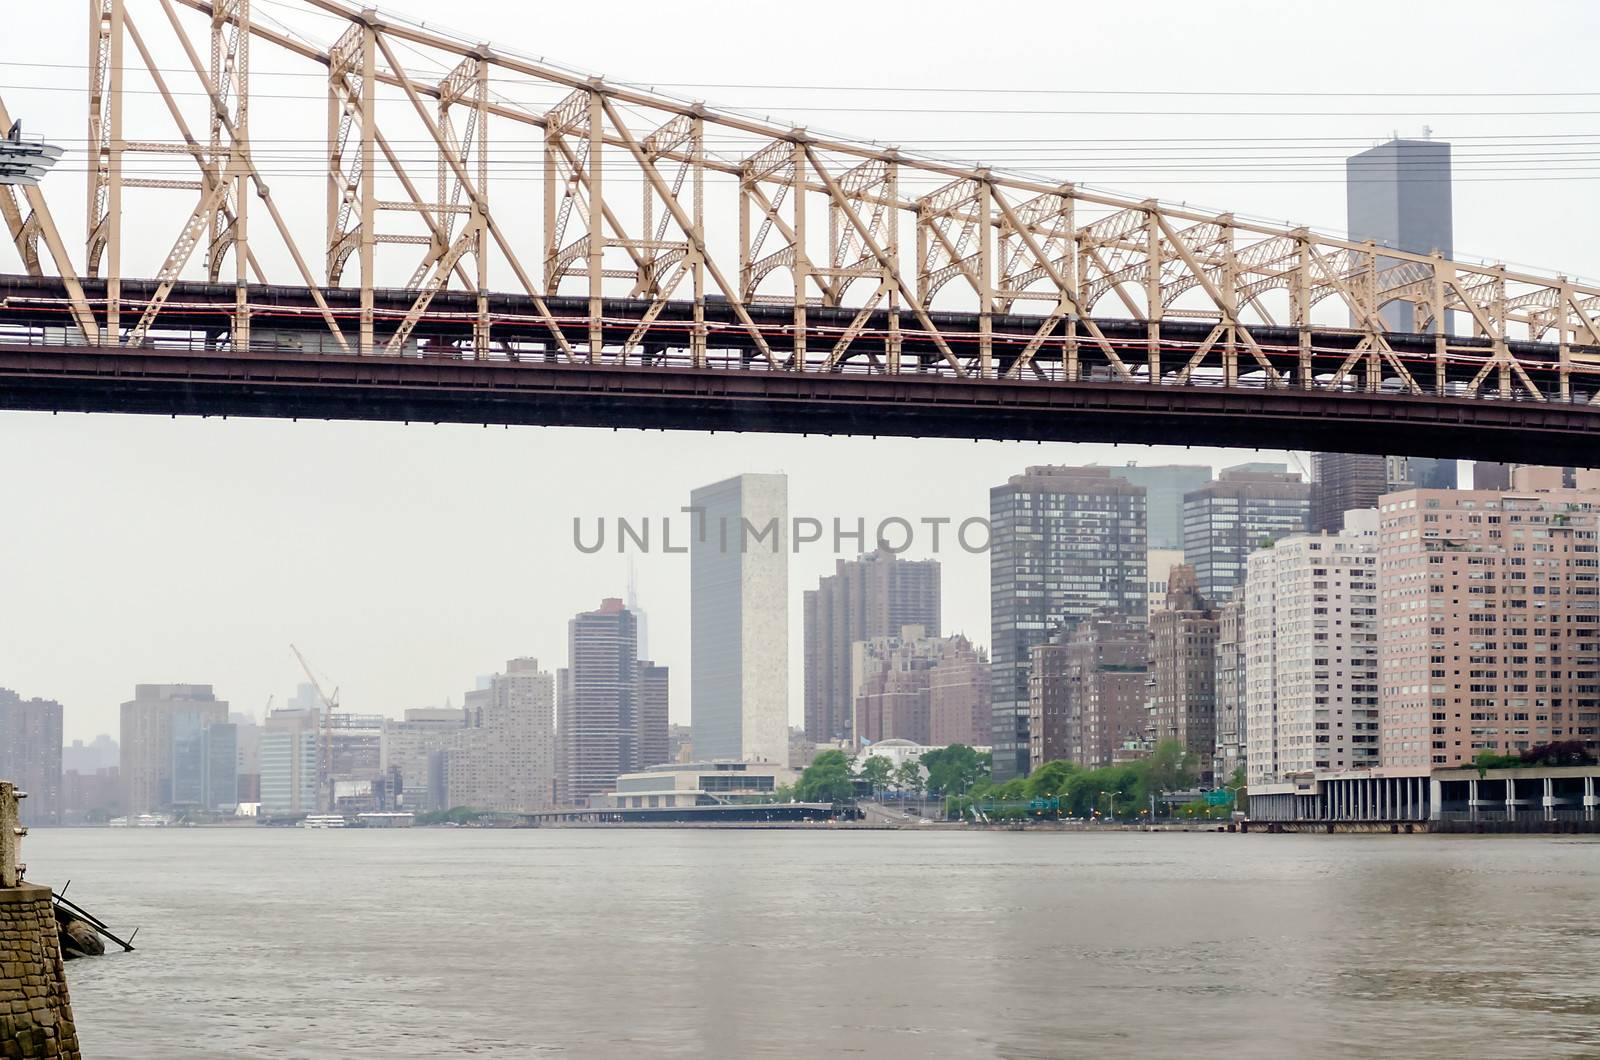 Queensboro Bridge and UN Headquarters, Manhattan by marcorubino